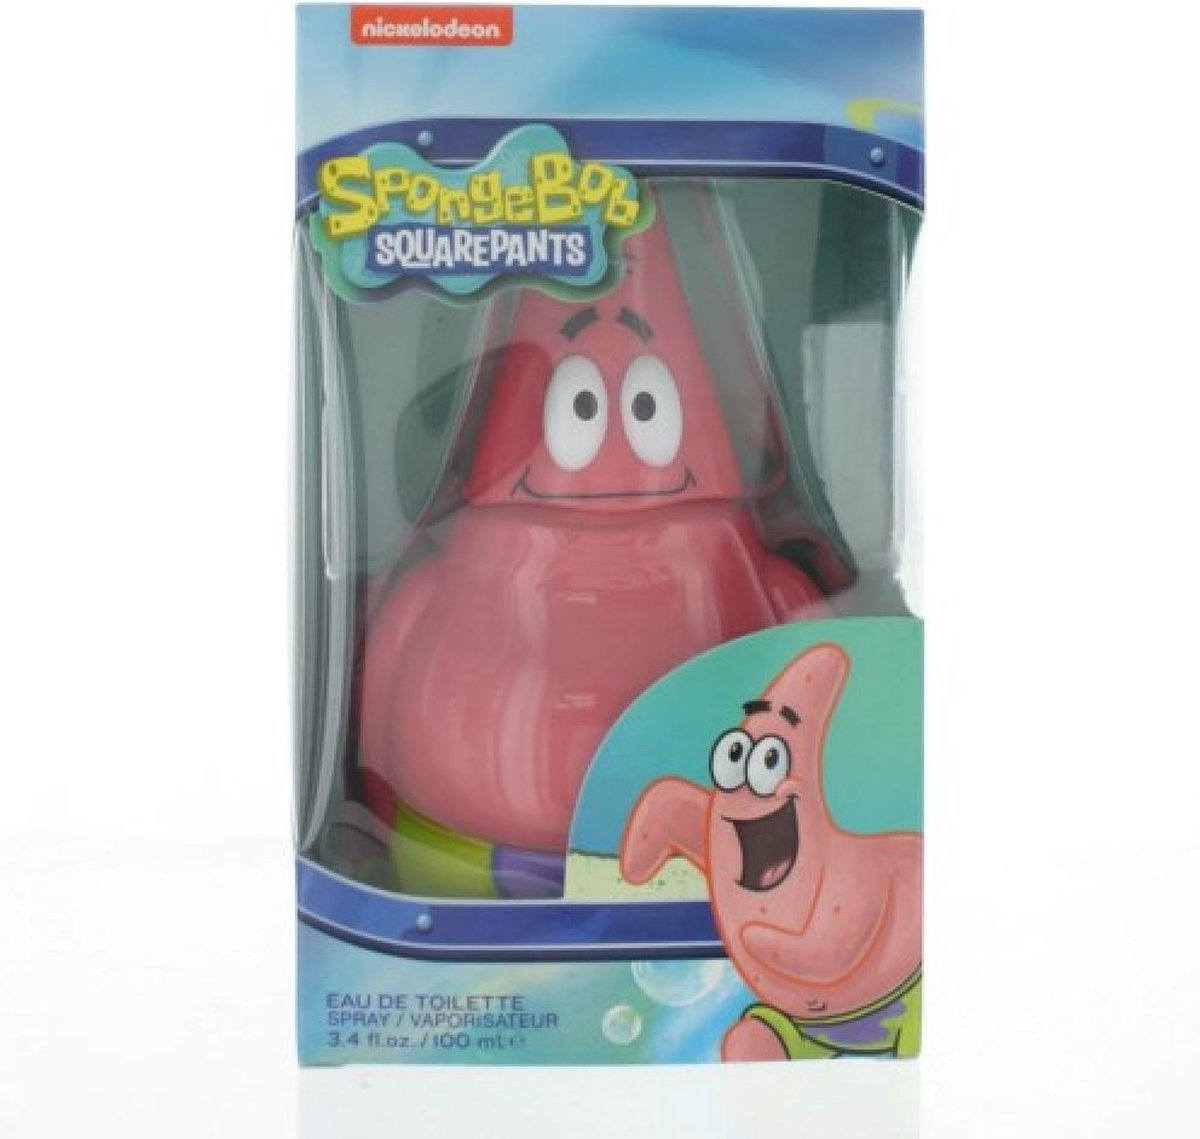 Spongebob Squarepants Patrick by Nickelodeon 100 ml - Eau De Toilette Spray - Nickelodeon